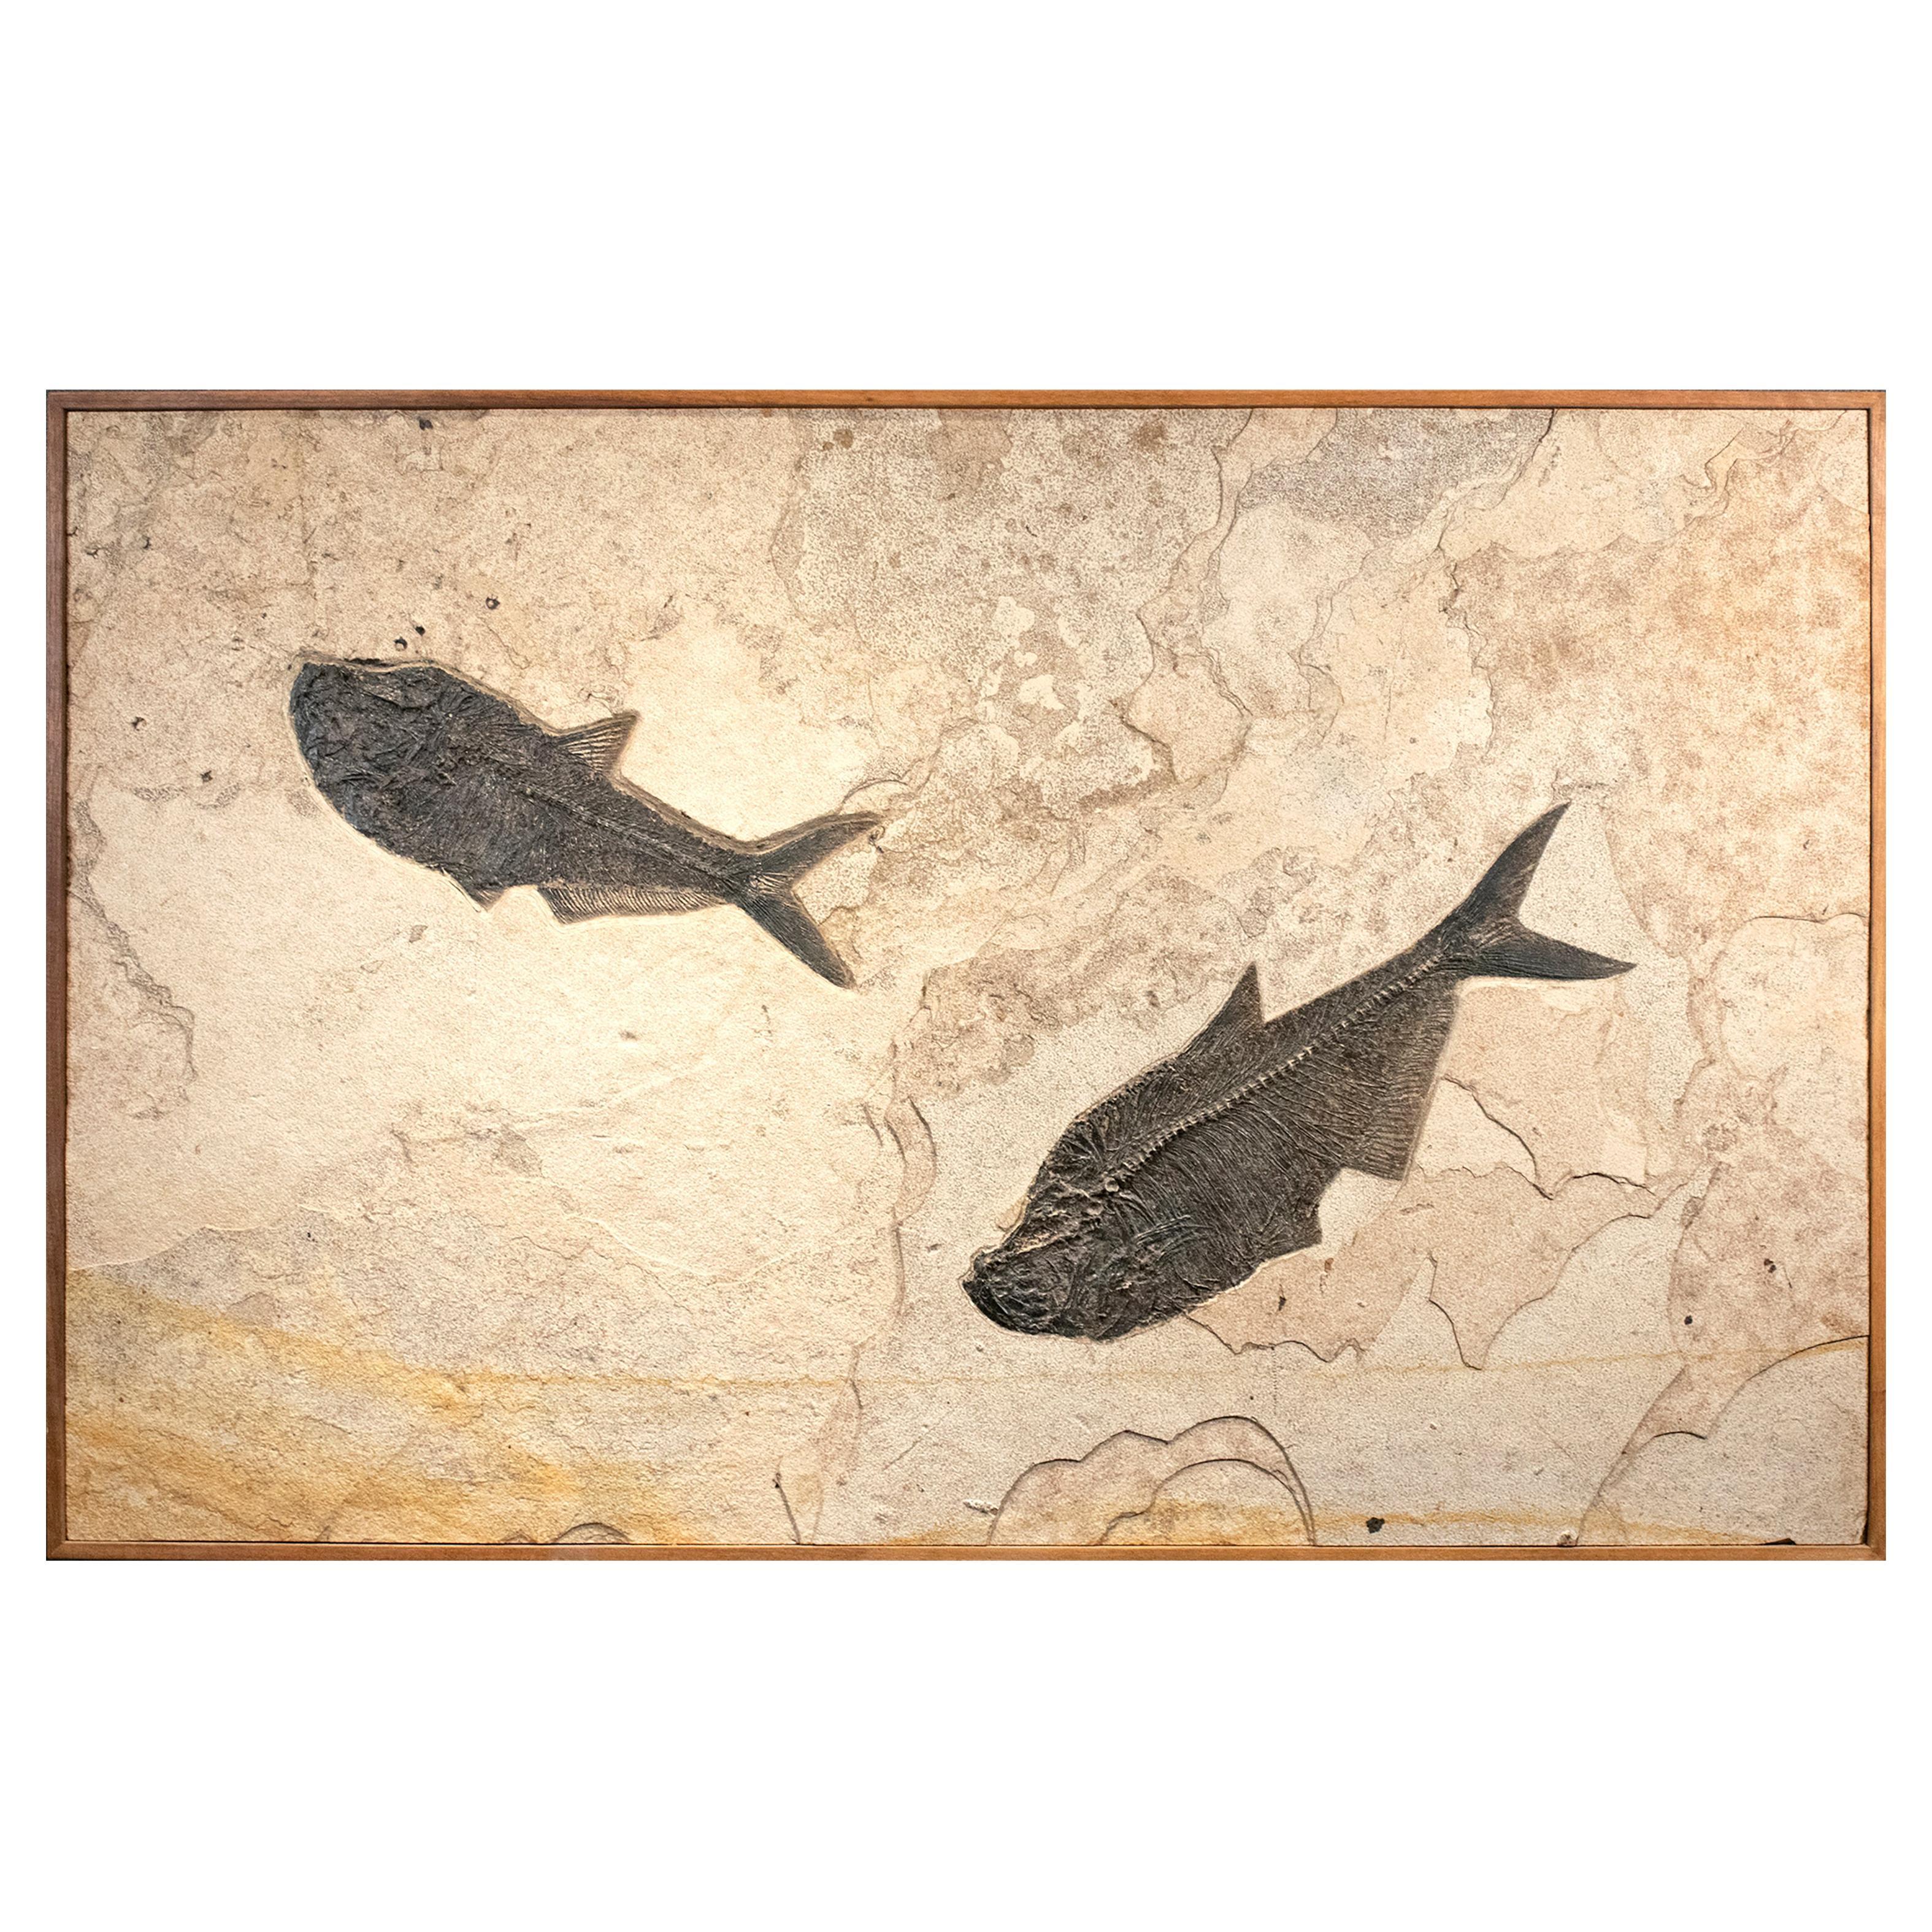 Murale en pierre représentant un poisson fossile de l'ère éocène, vieux de 50 millions d'années, provenant du Wyoming